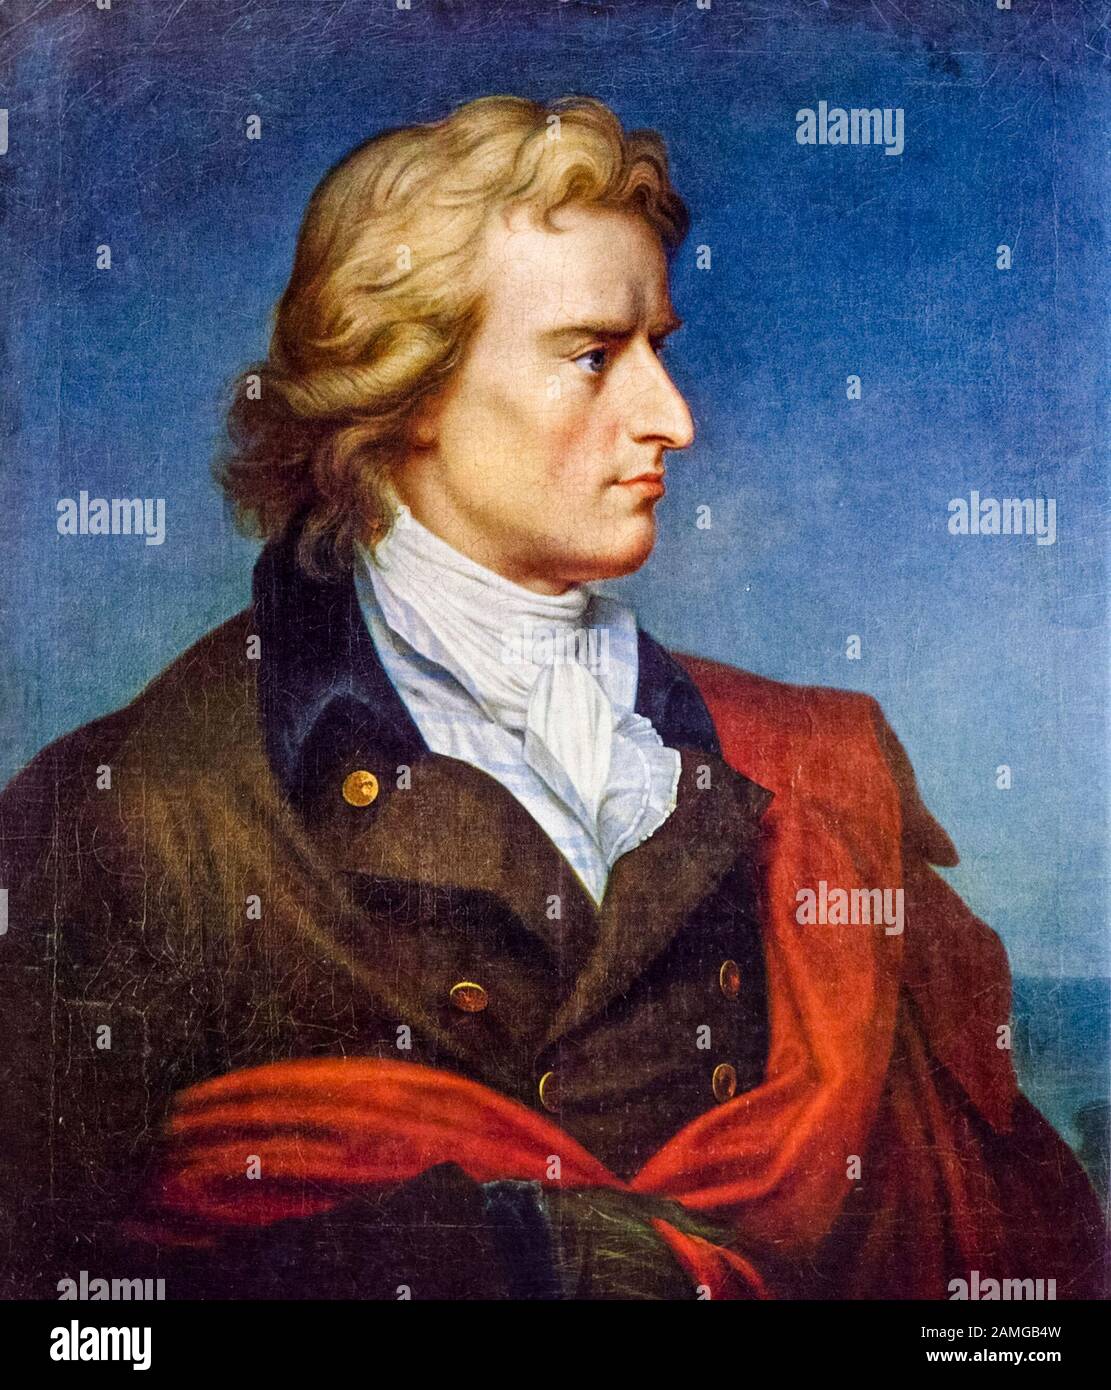 Friedrich Schiller (1759-1805), portrait painting by Gerhard von Kügelgen, 1808-1809 Stock Photo